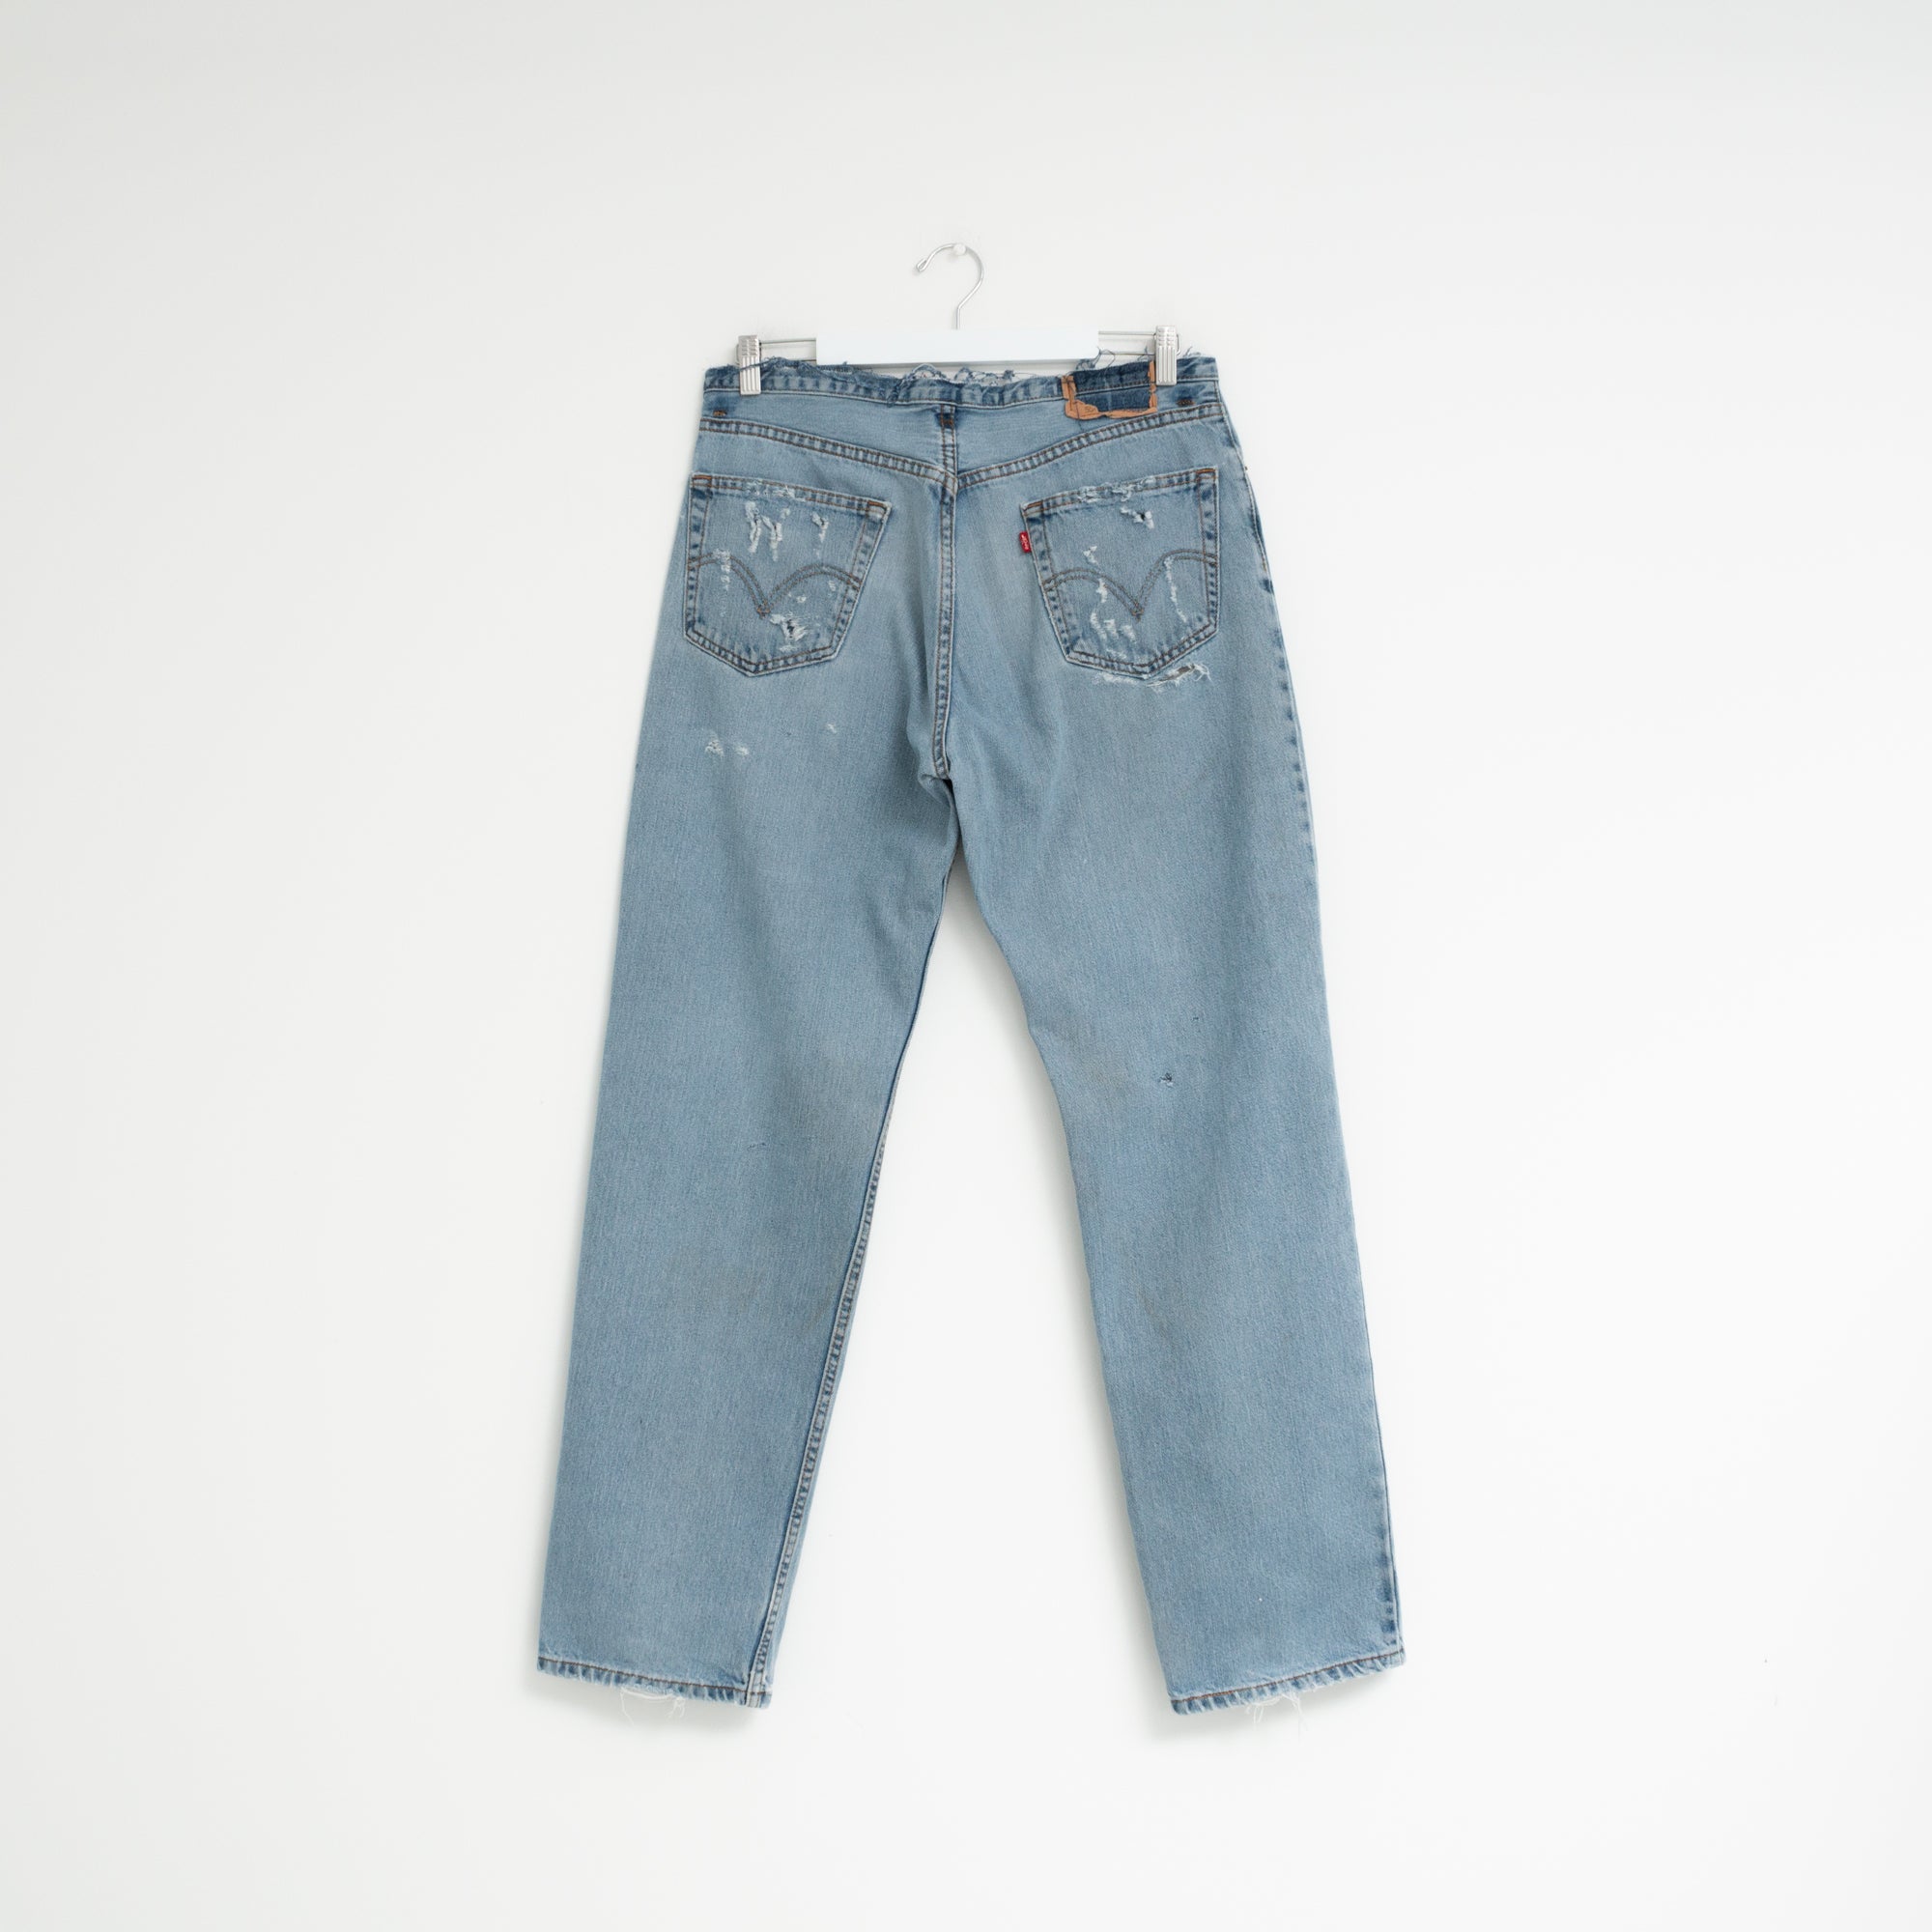 "DISTRESSED" Jeans W34 L33